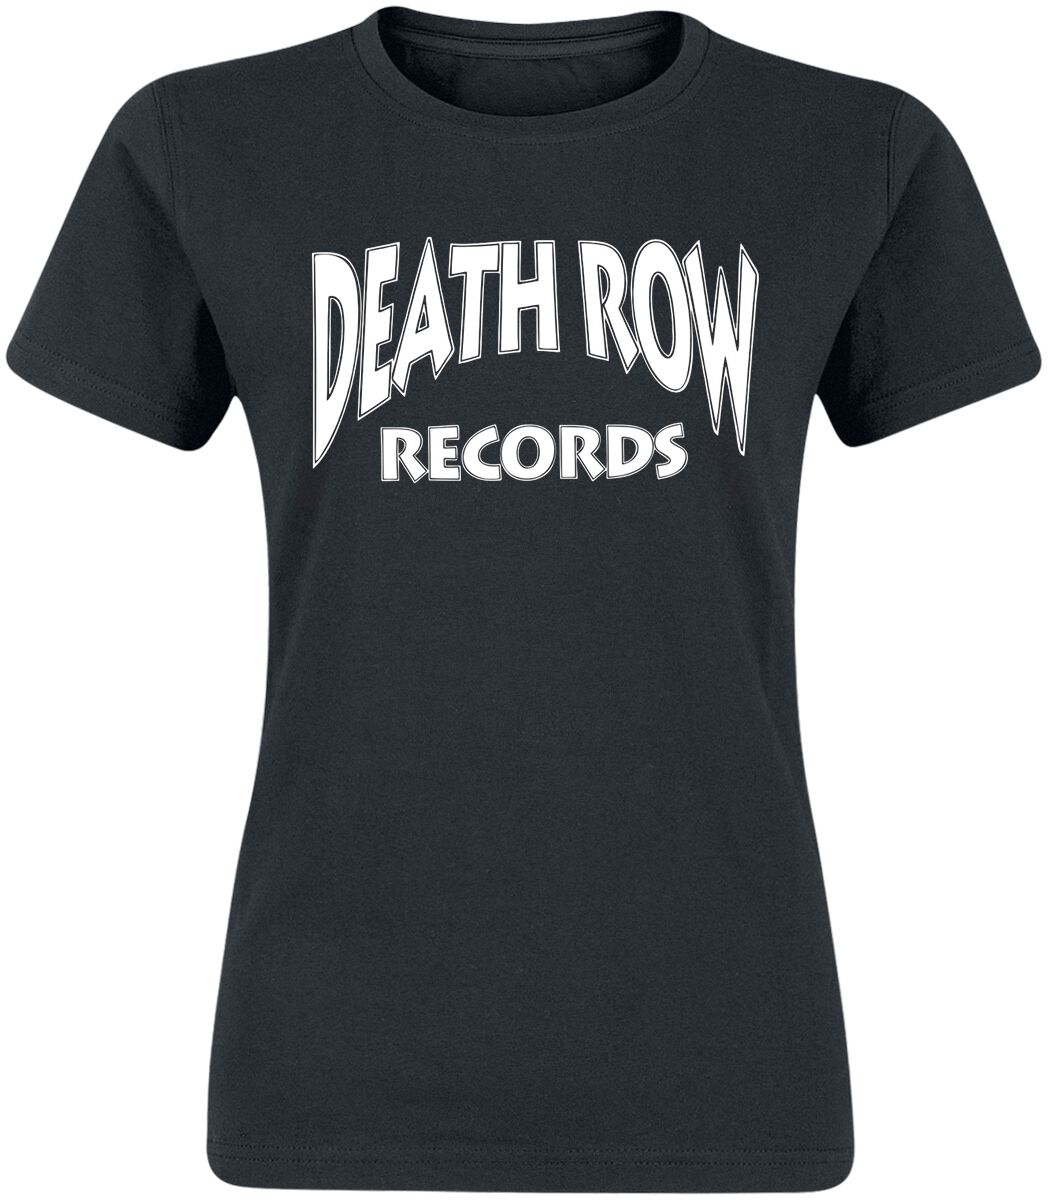 Death Row Records T-Shirt - Classic Logo - S bis XL - für Damen - Größe S - schwarz  - Lizenziertes Merchandise!